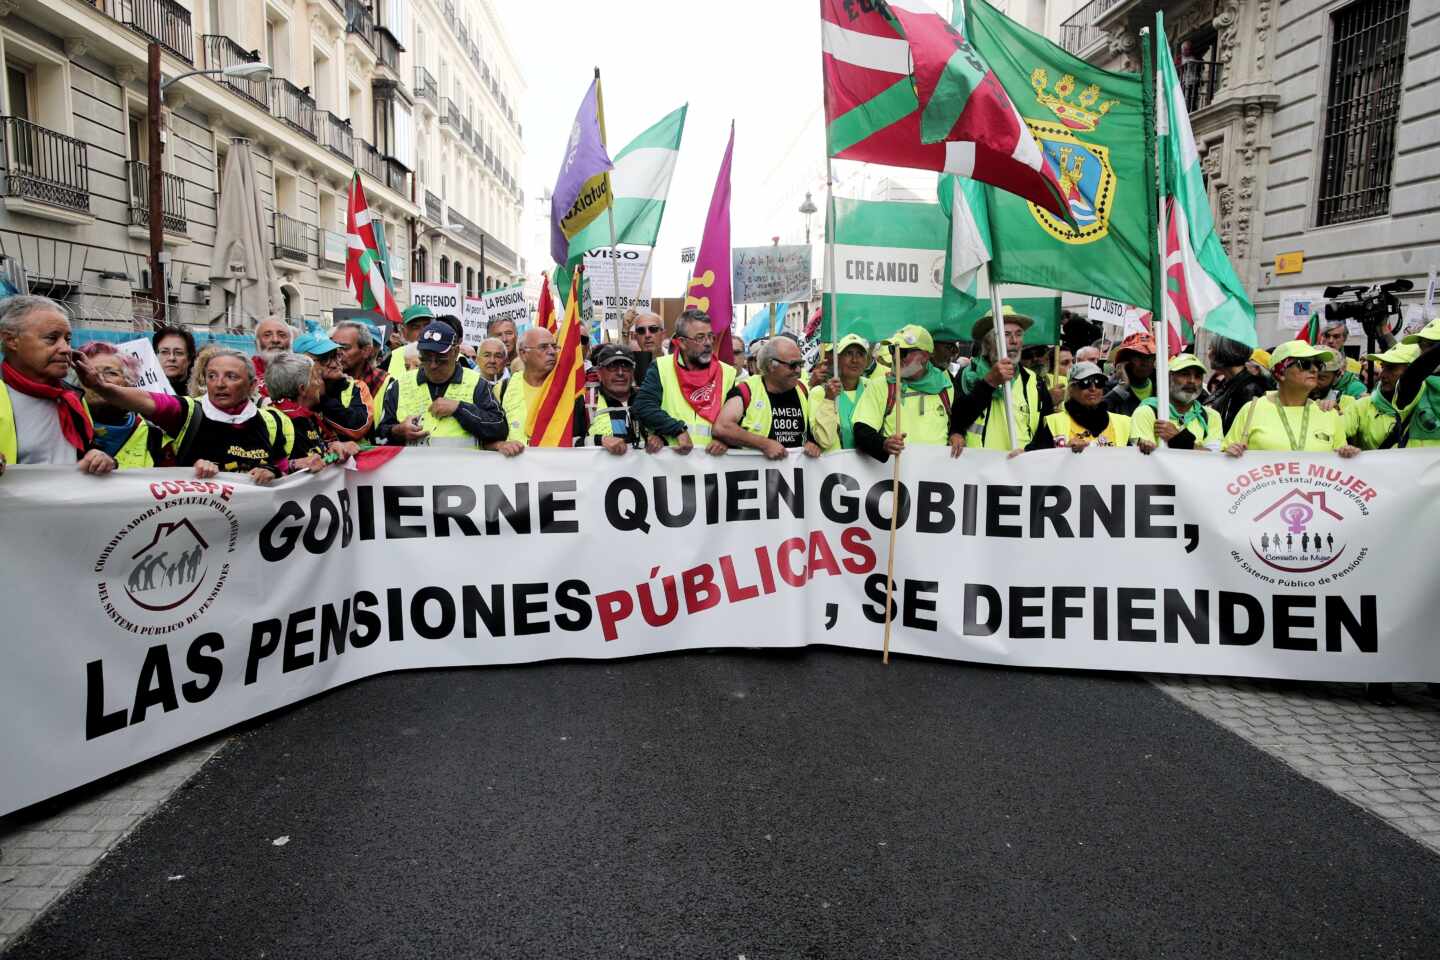 España sólo cubriría 4 meses de pensiones con el ahorro de 4 años de deuda en mínimos